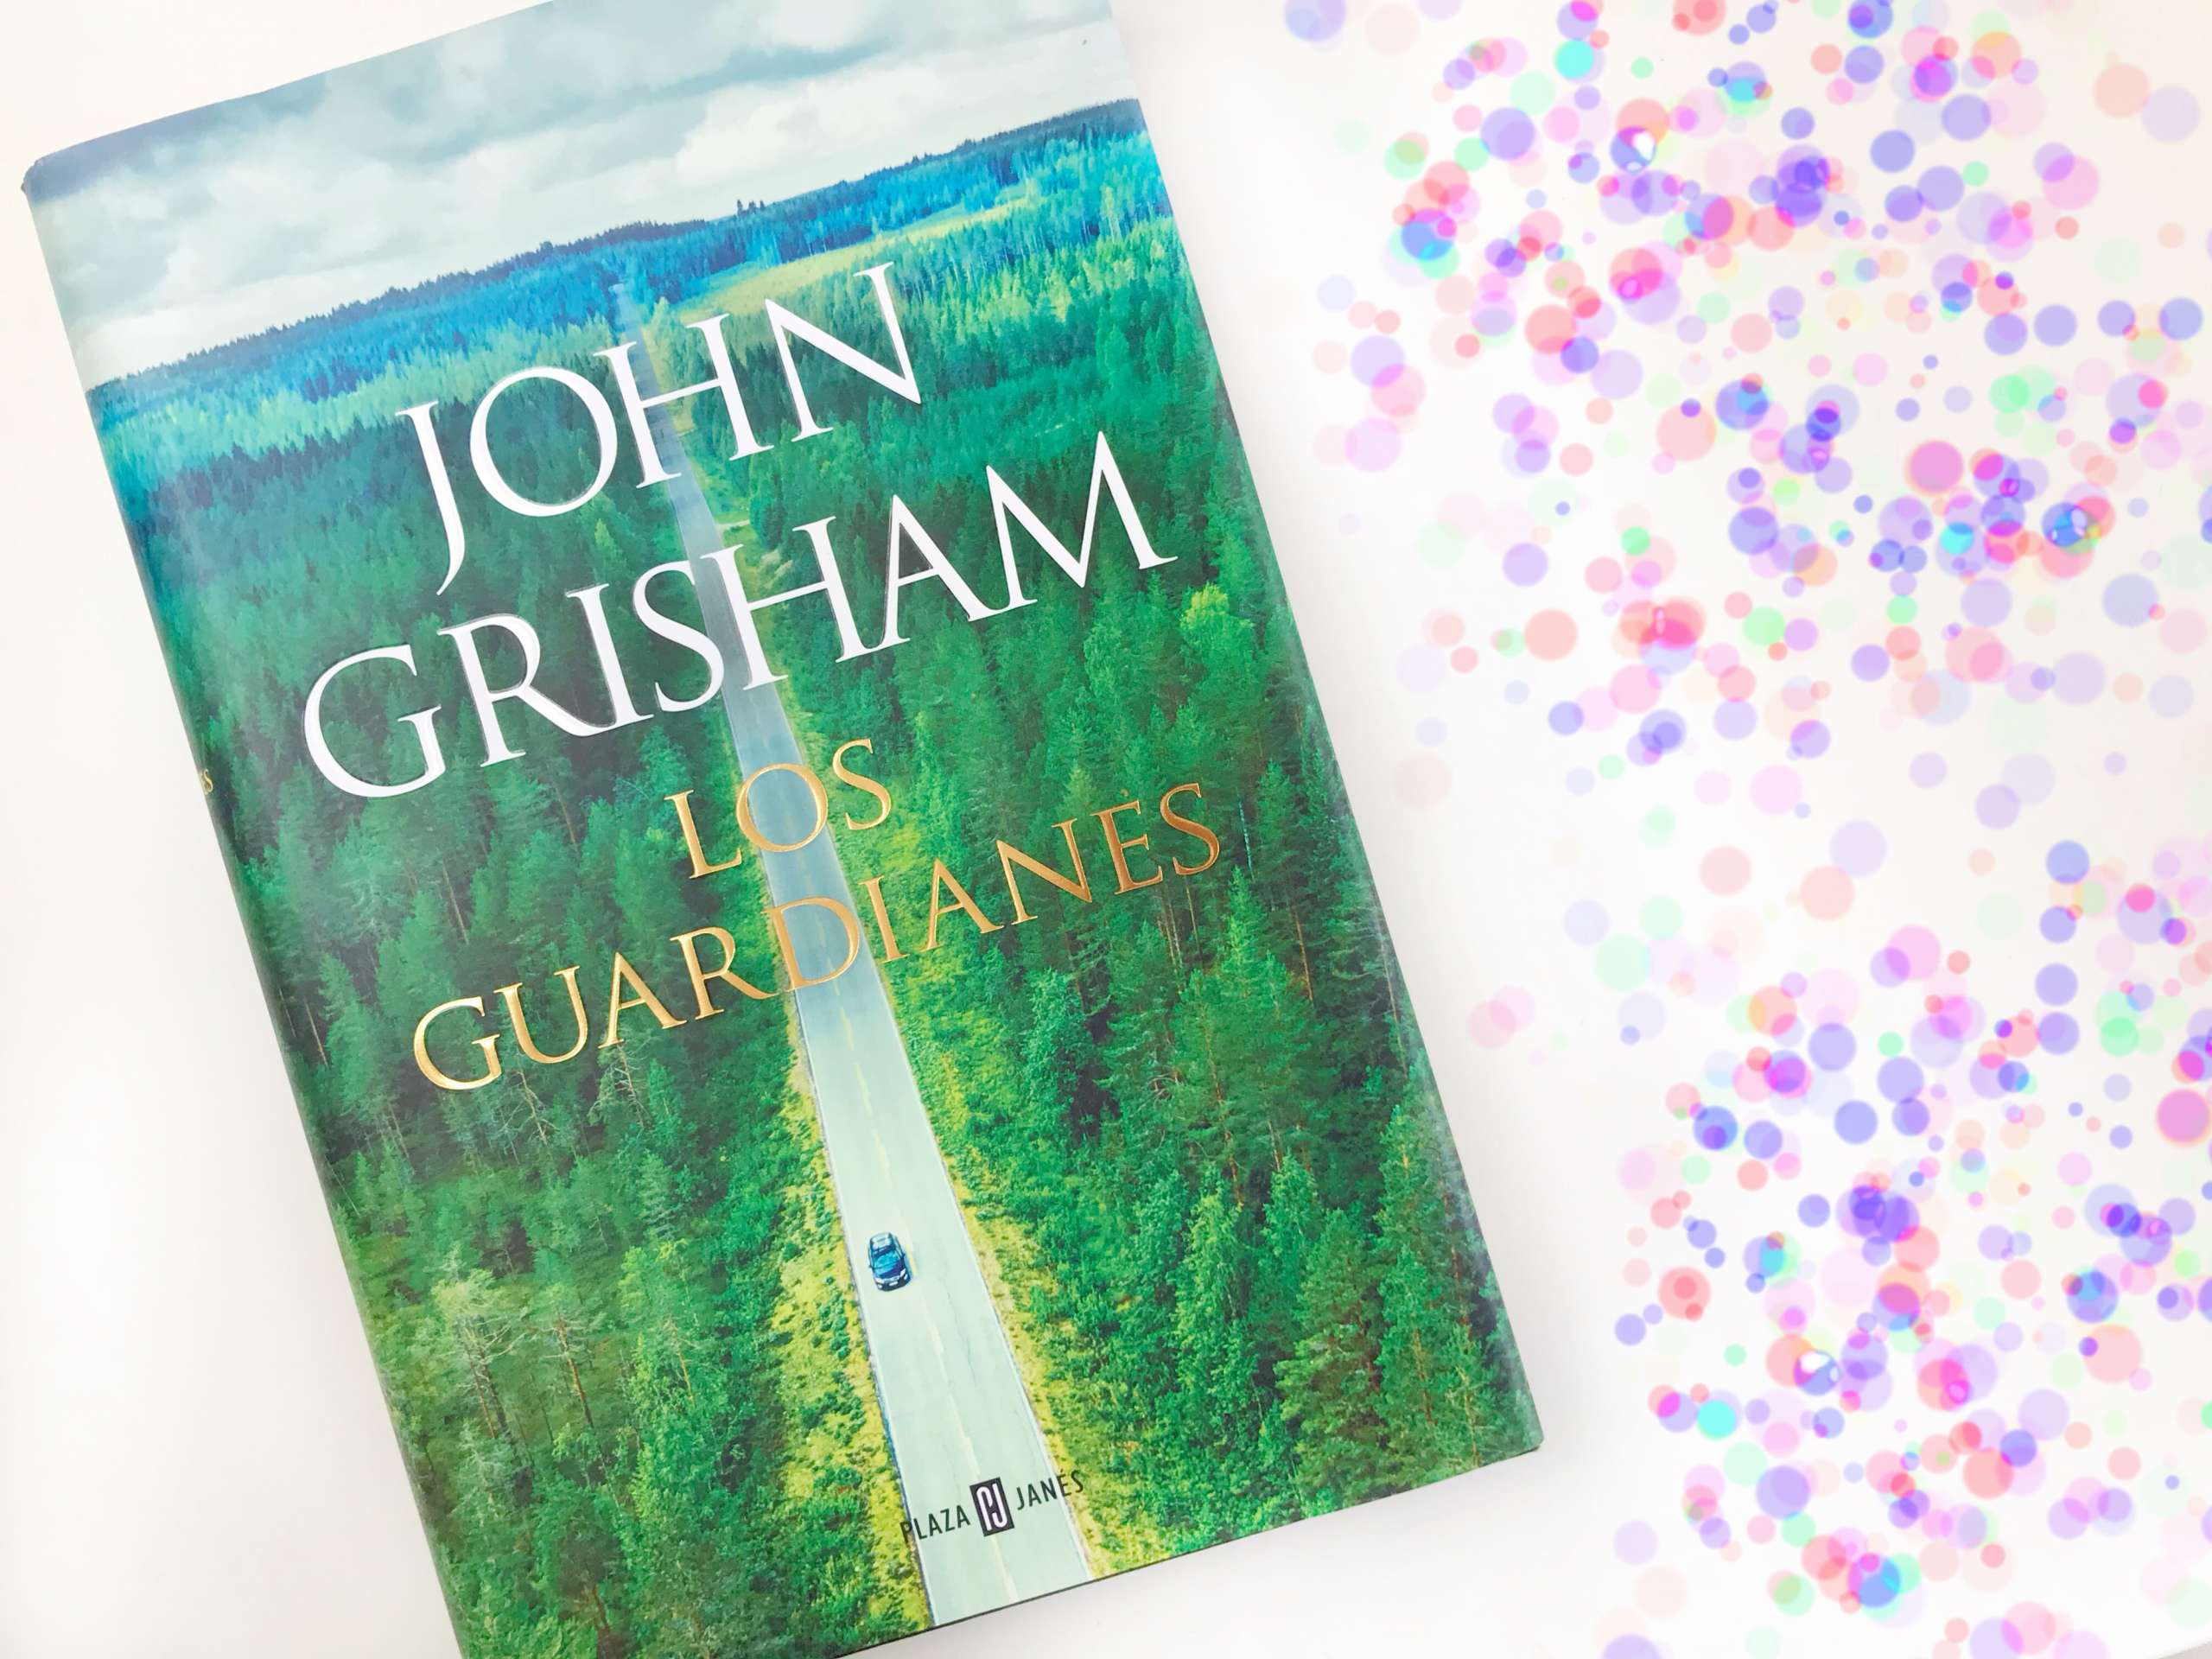 Los guardianes, de John Grisham